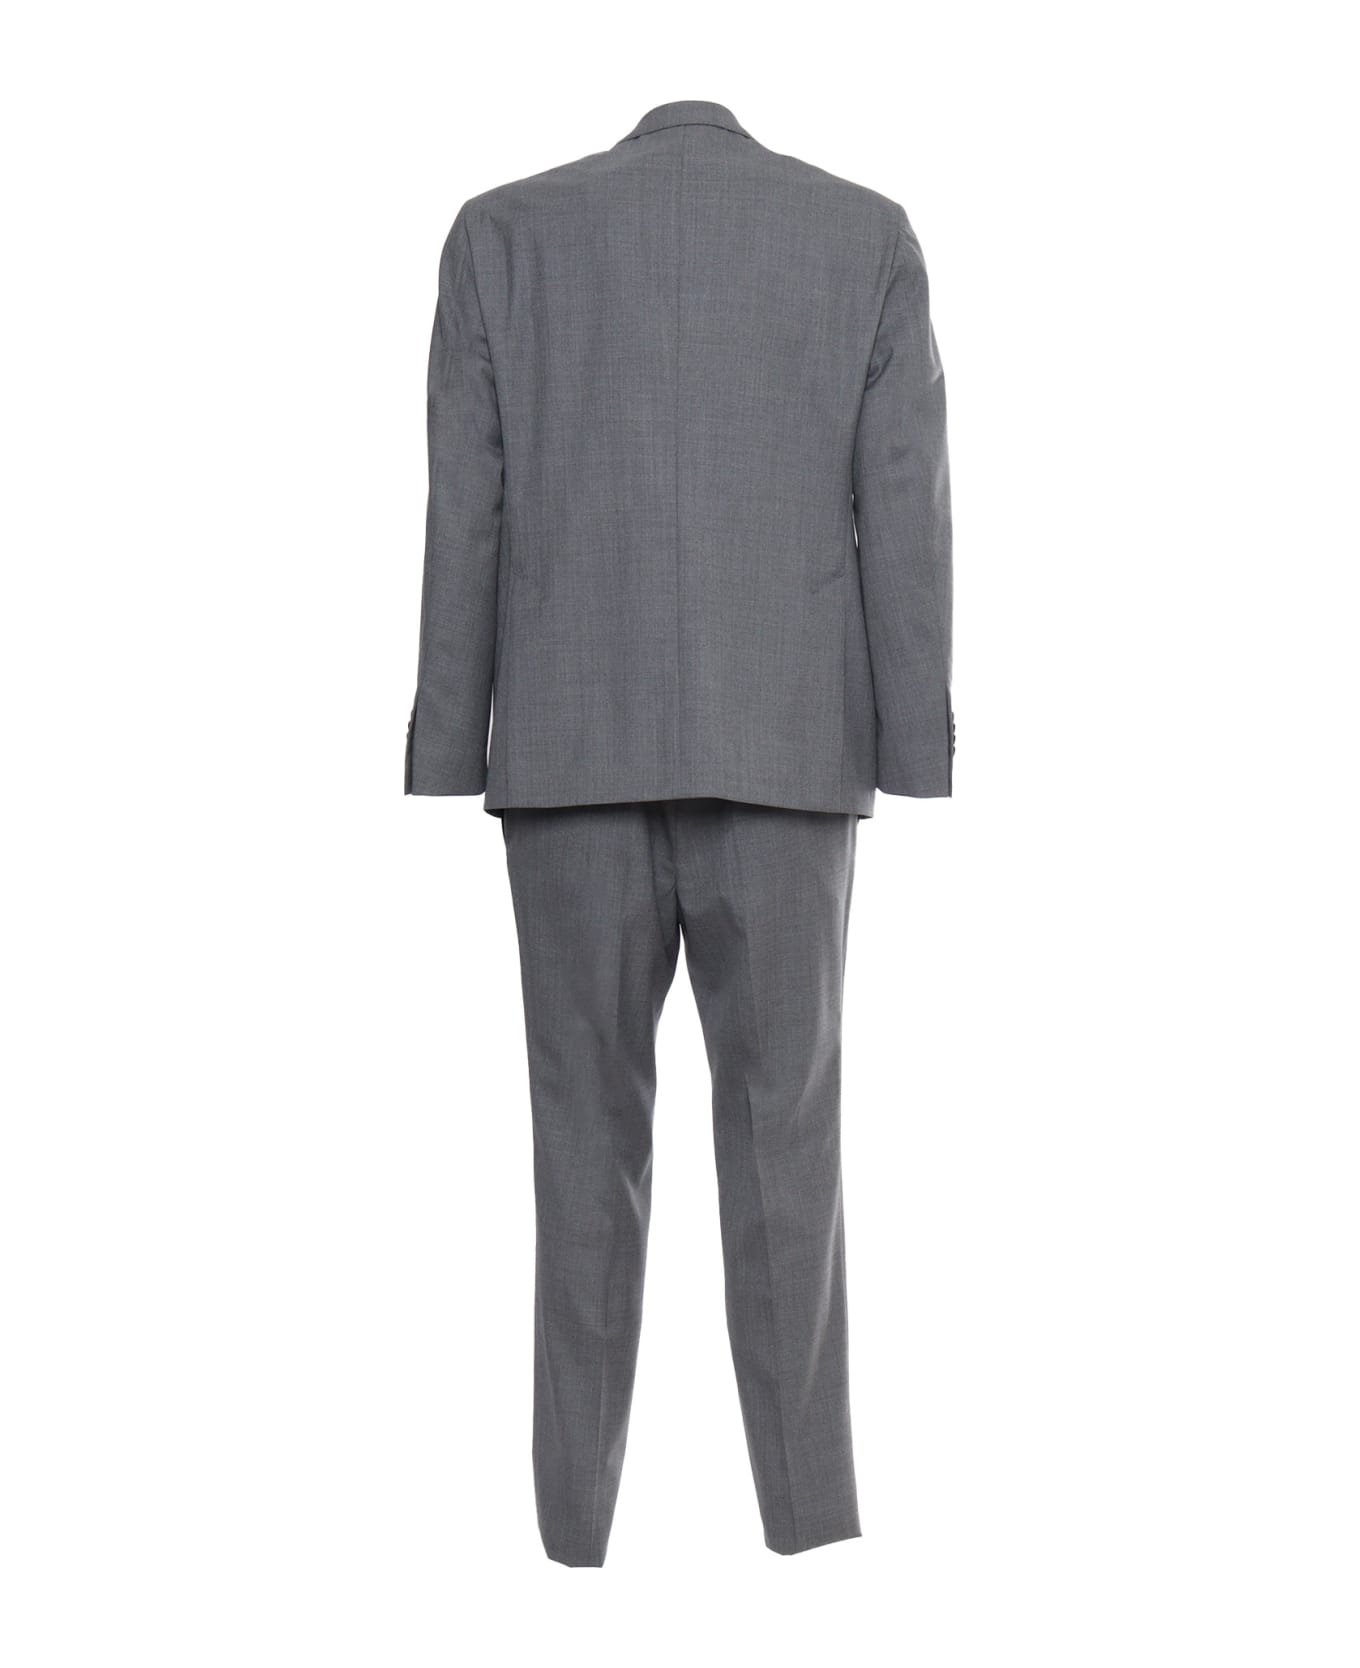 Luigi Bianchi Mantova Gray Men's Suit - GREY スーツ